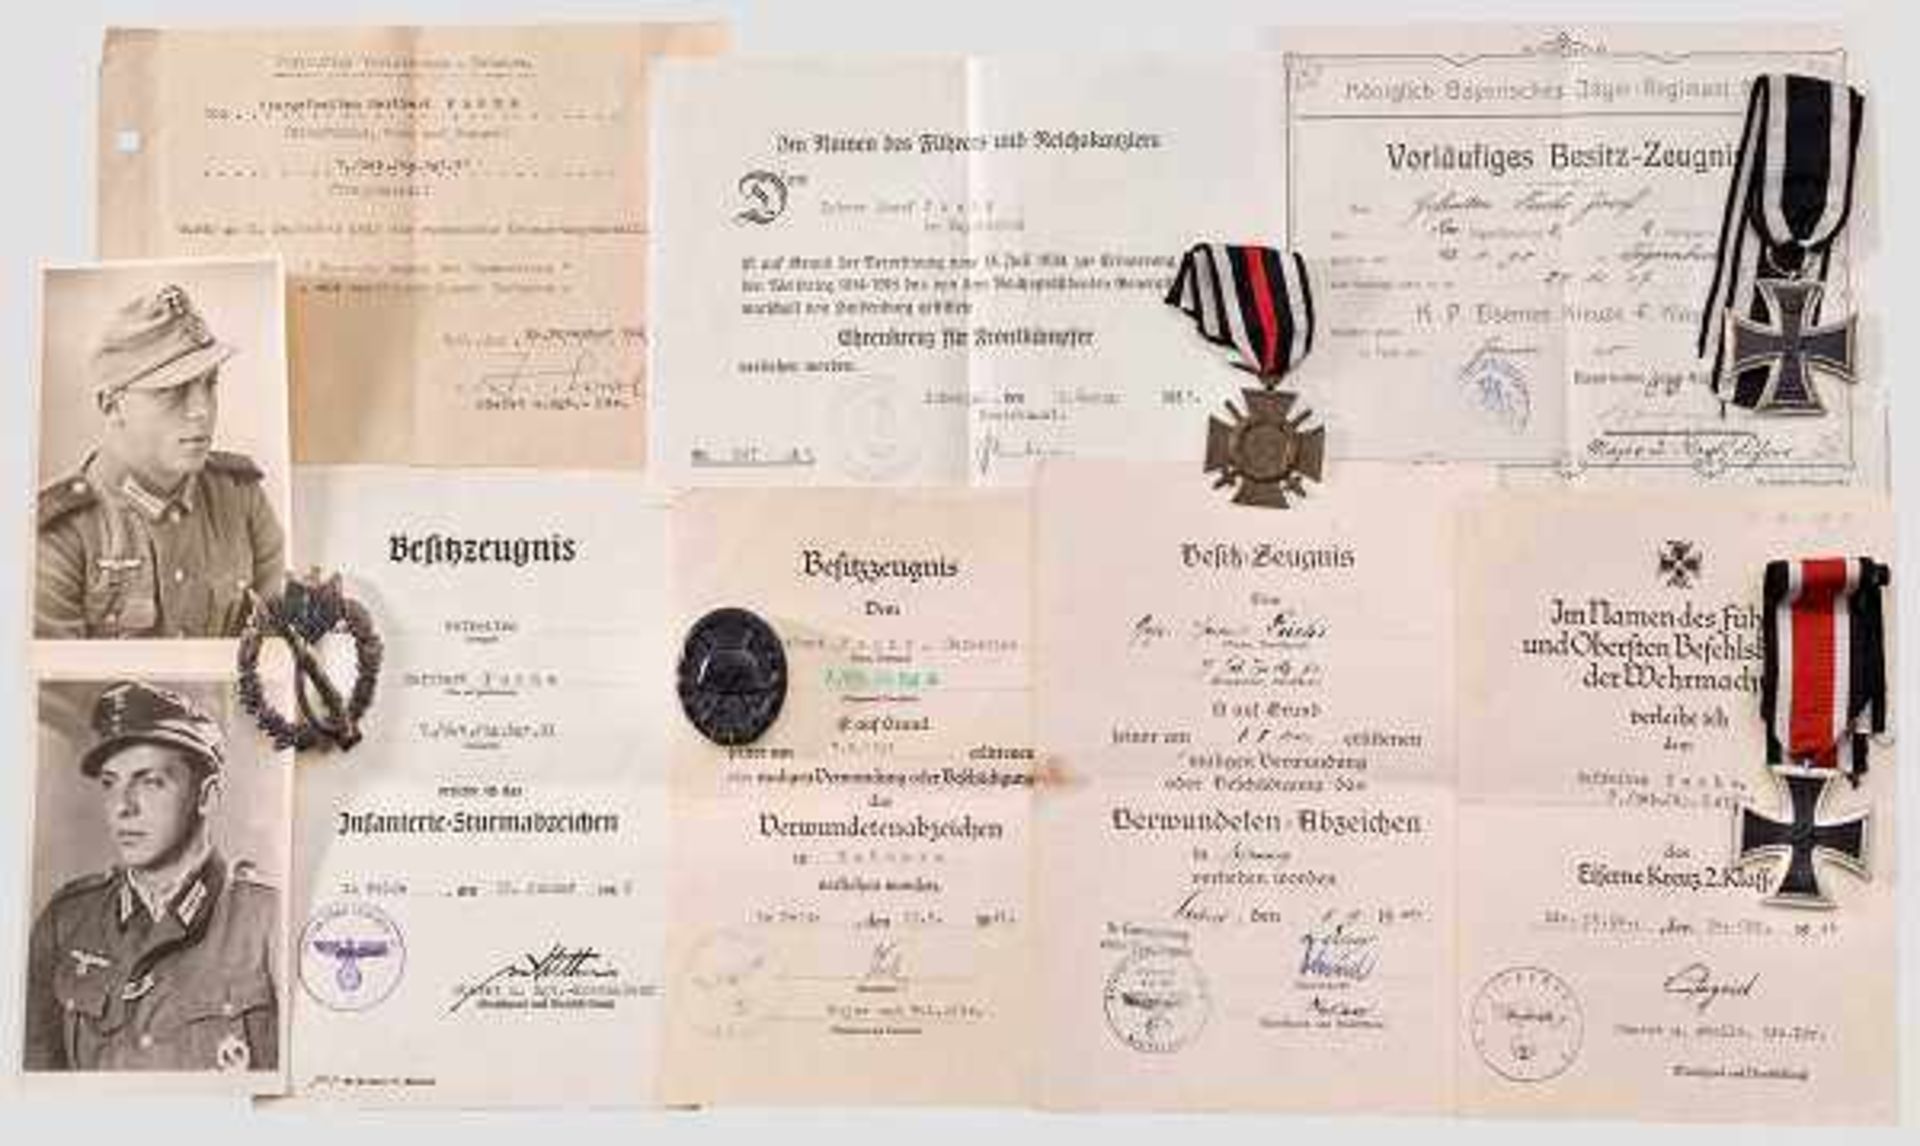 Auszeichnungs- und Urkundennachlass des Gefreiten Heribert Fuchs vom Gebirgsjäger-Regiment 91 und